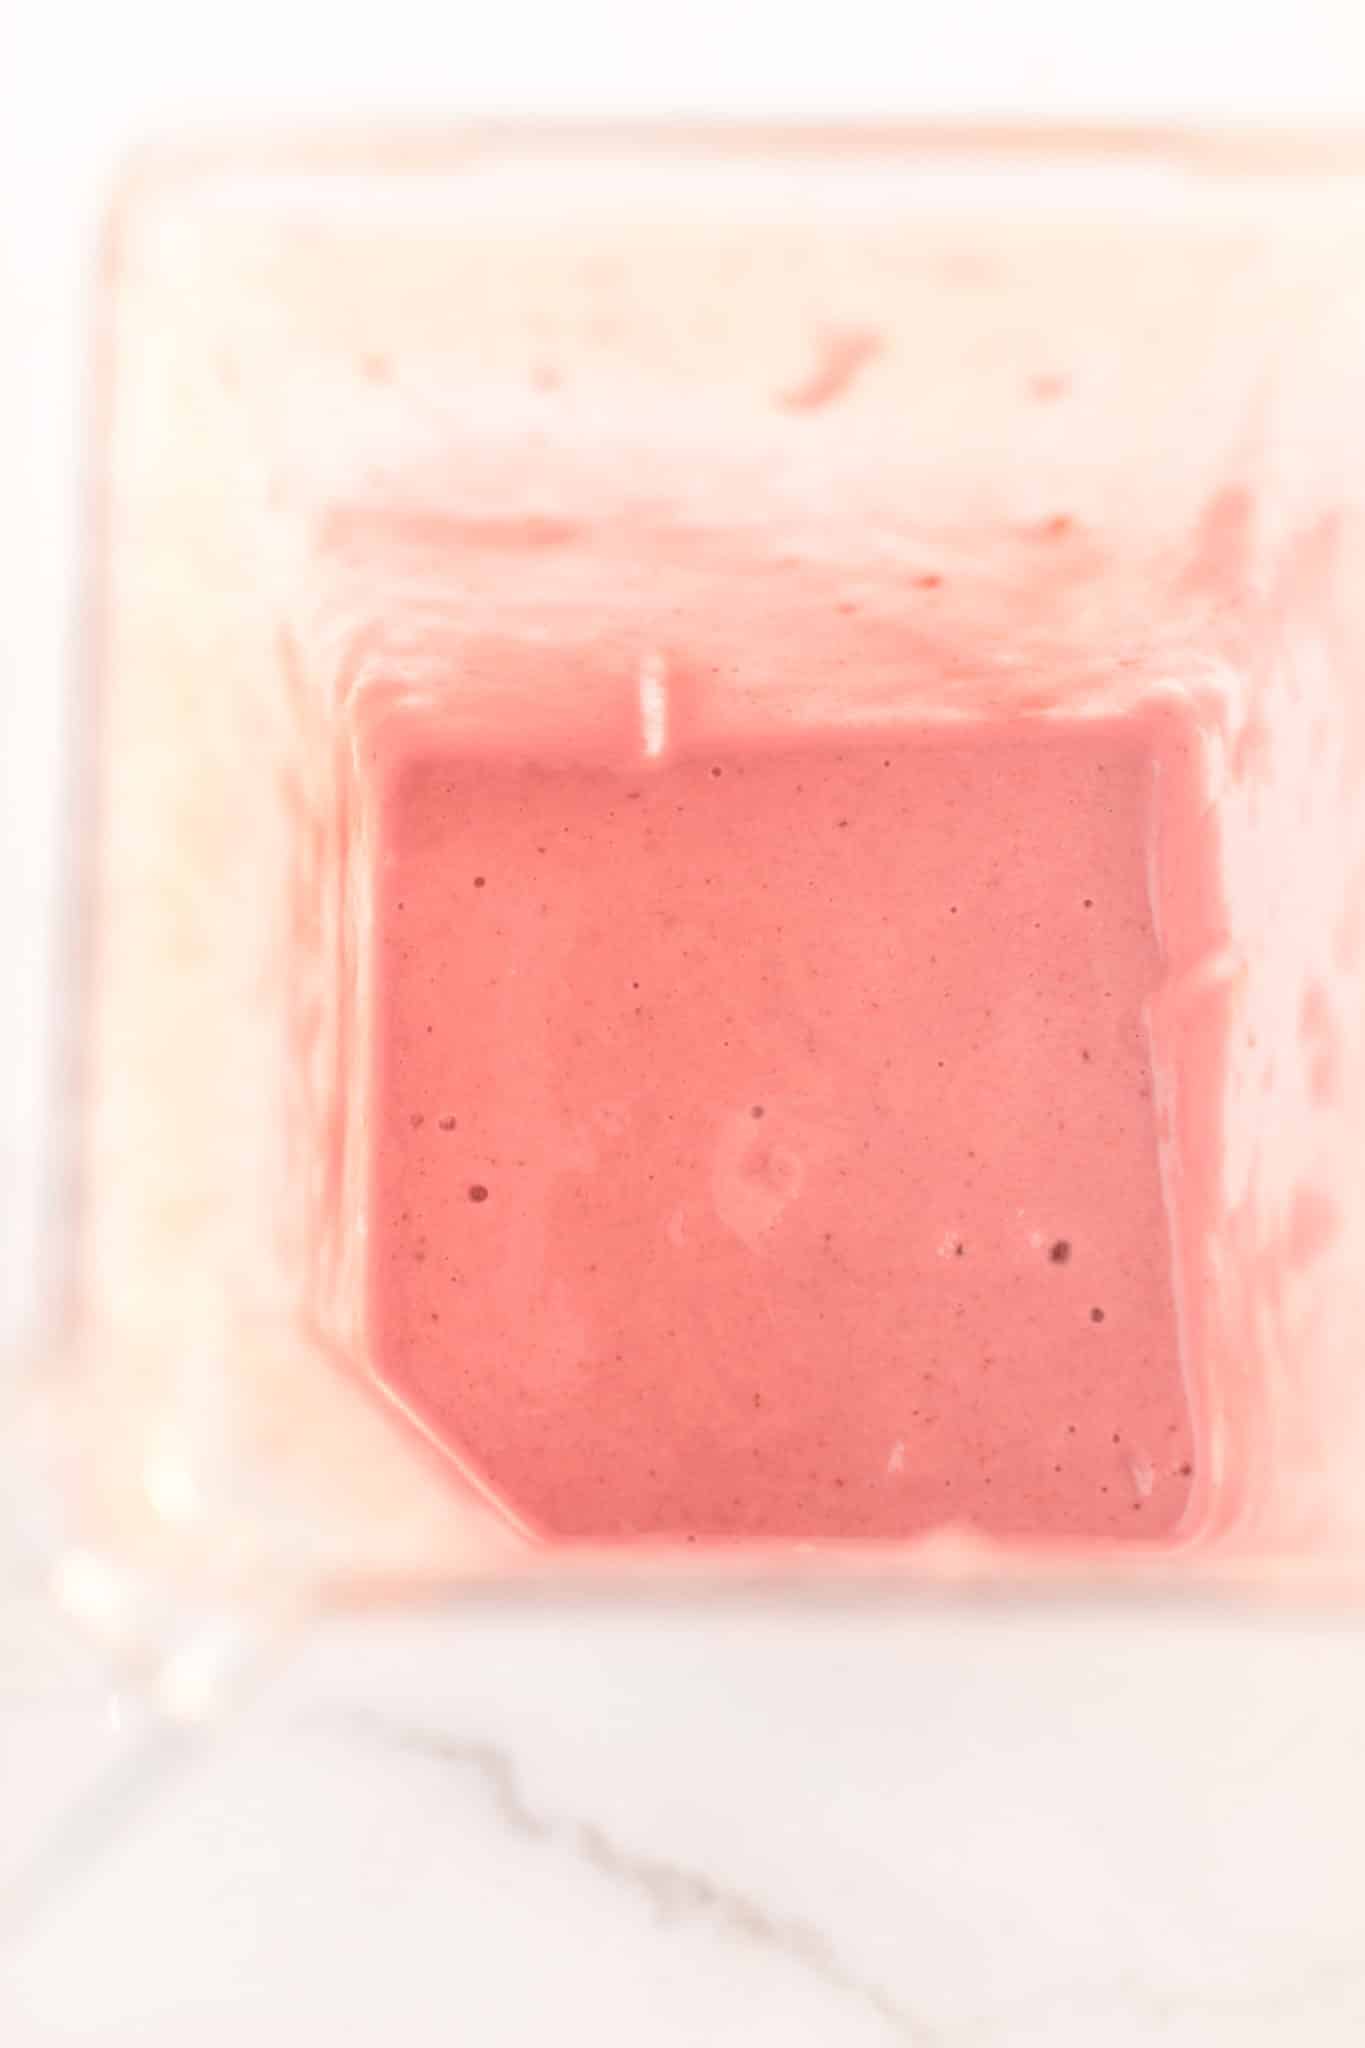 strawberry milkshake in blender.